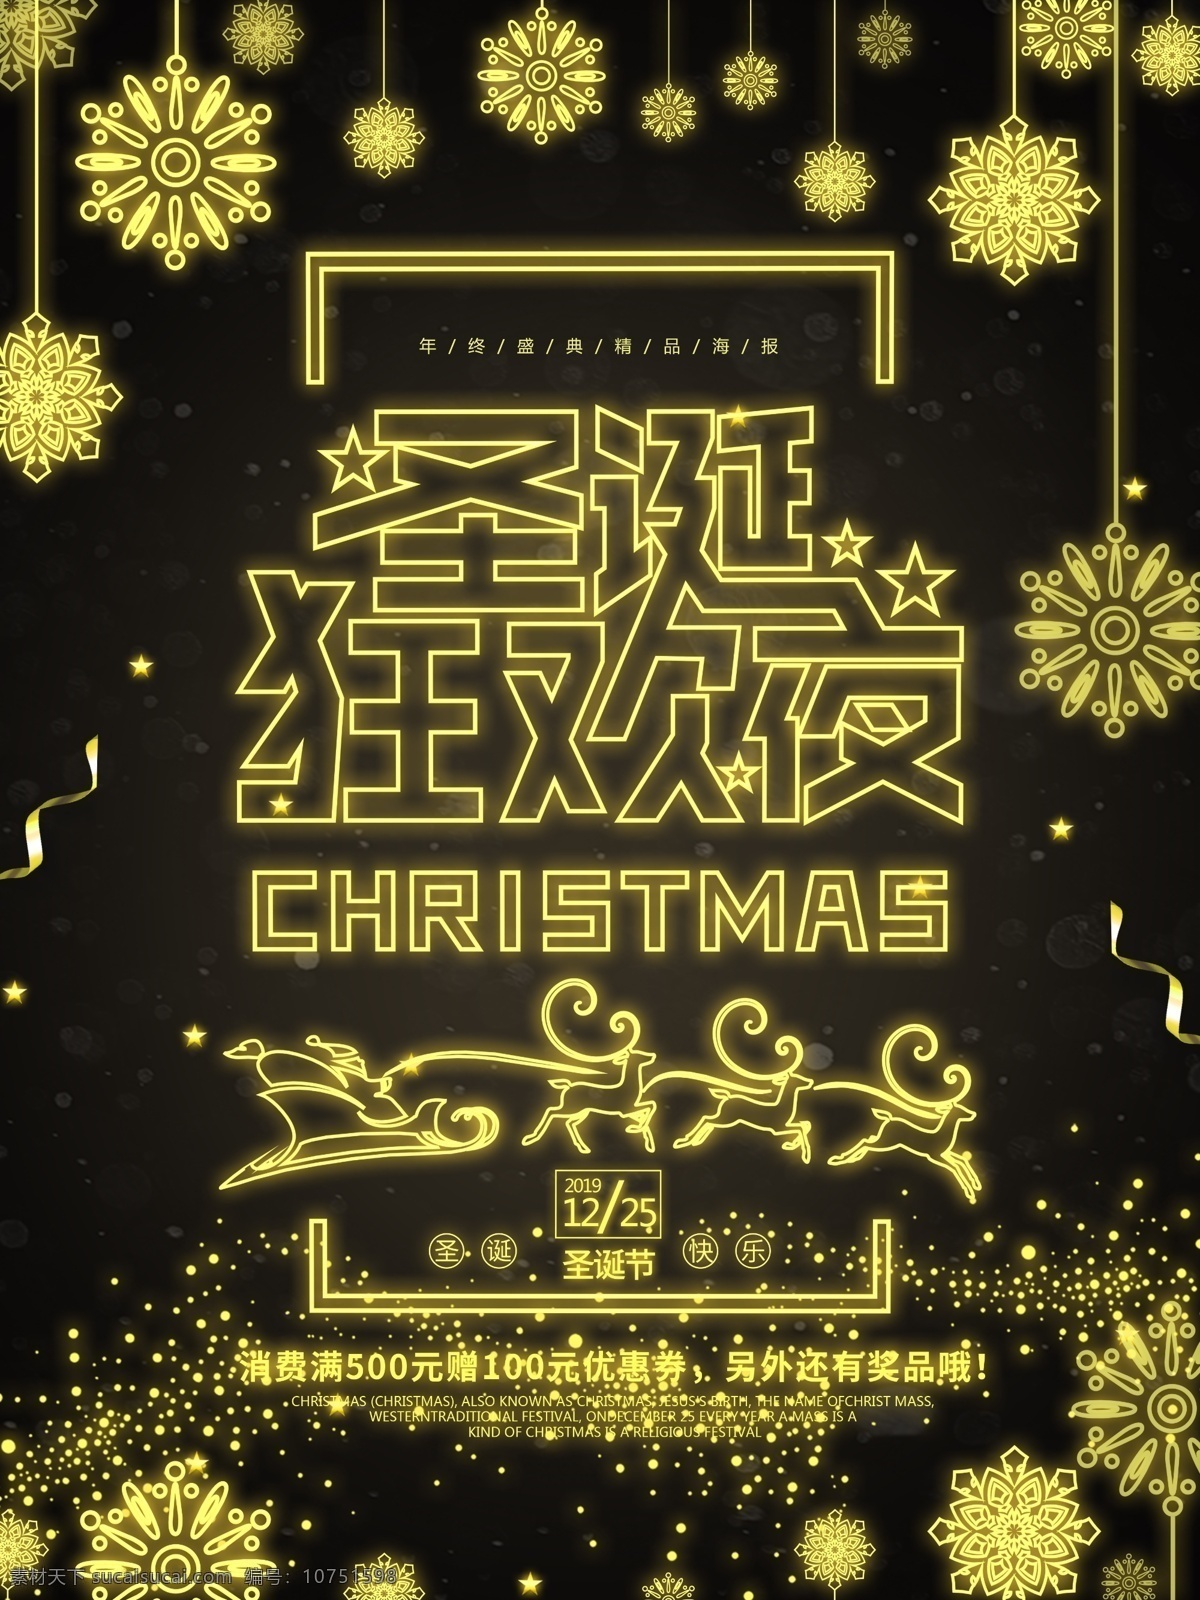 2018 圣诞 狂欢夜 金色 发光 海报 圣诞节 星星 雪花 圣诞老人 圣诞狂欢 麋鹿